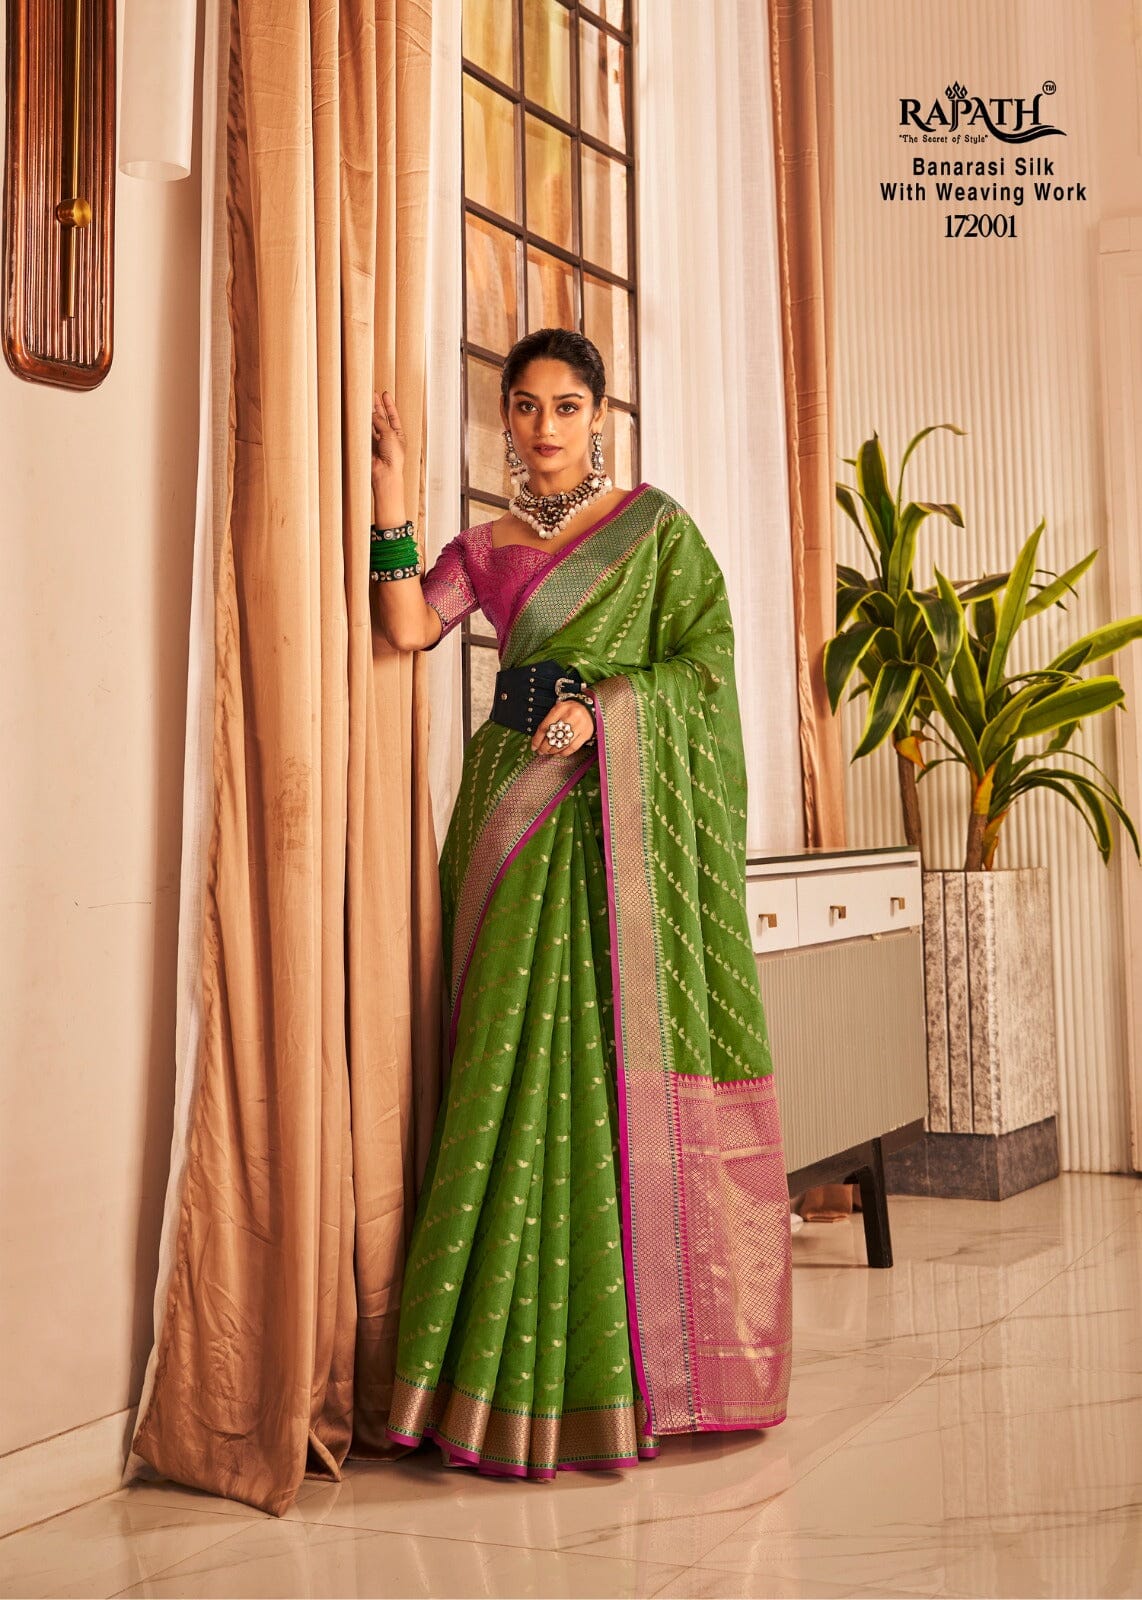 172001 Rajpath Vaijanti Banarasi Silk With Weaving Saree Silk Saree Shopin Di Apparels 